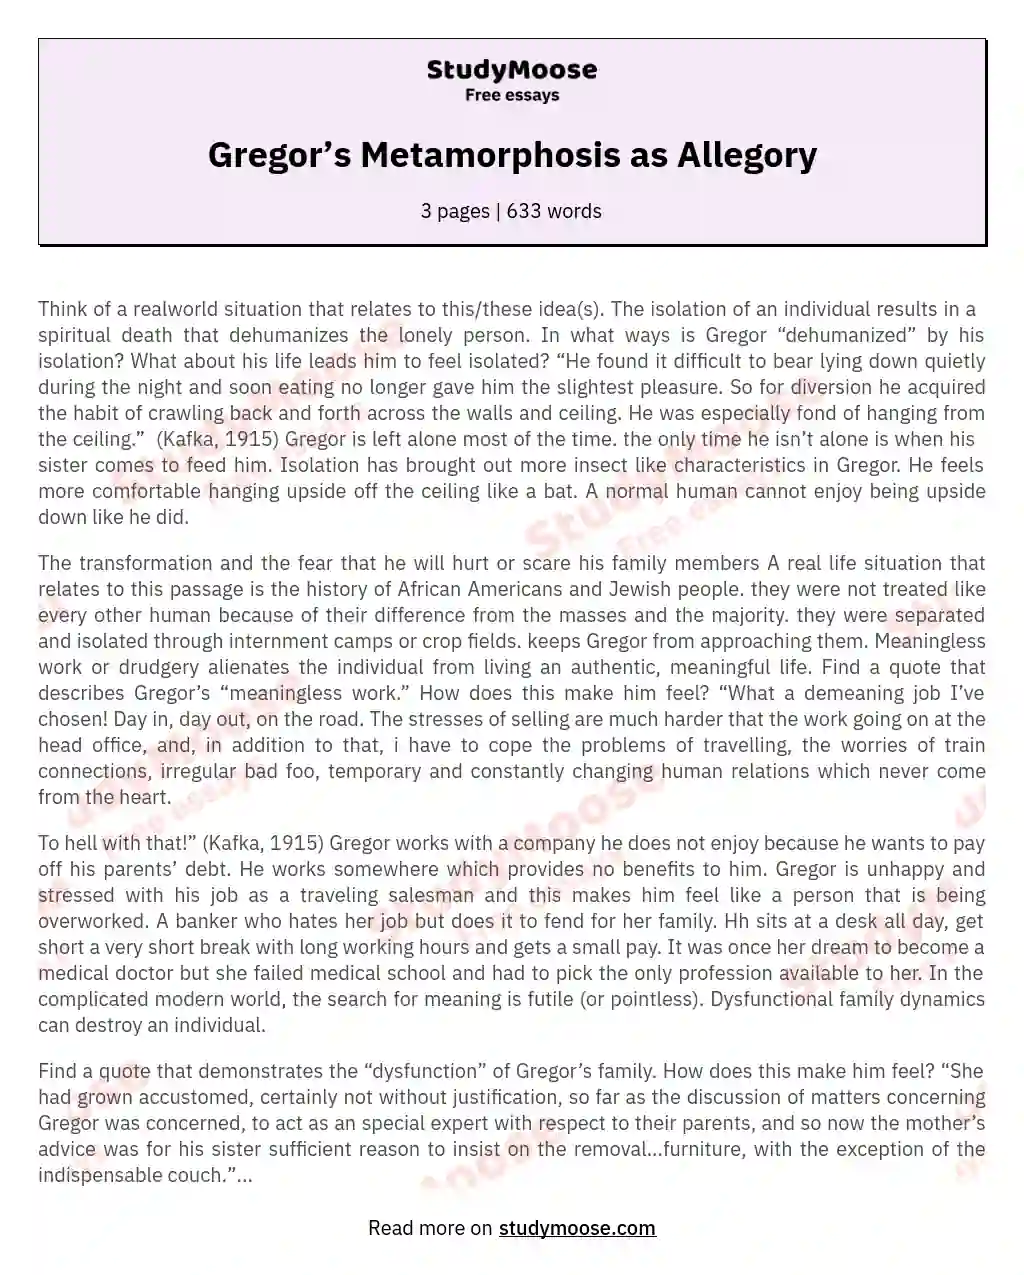 Gregor’s Metamorphosis as Allegory essay